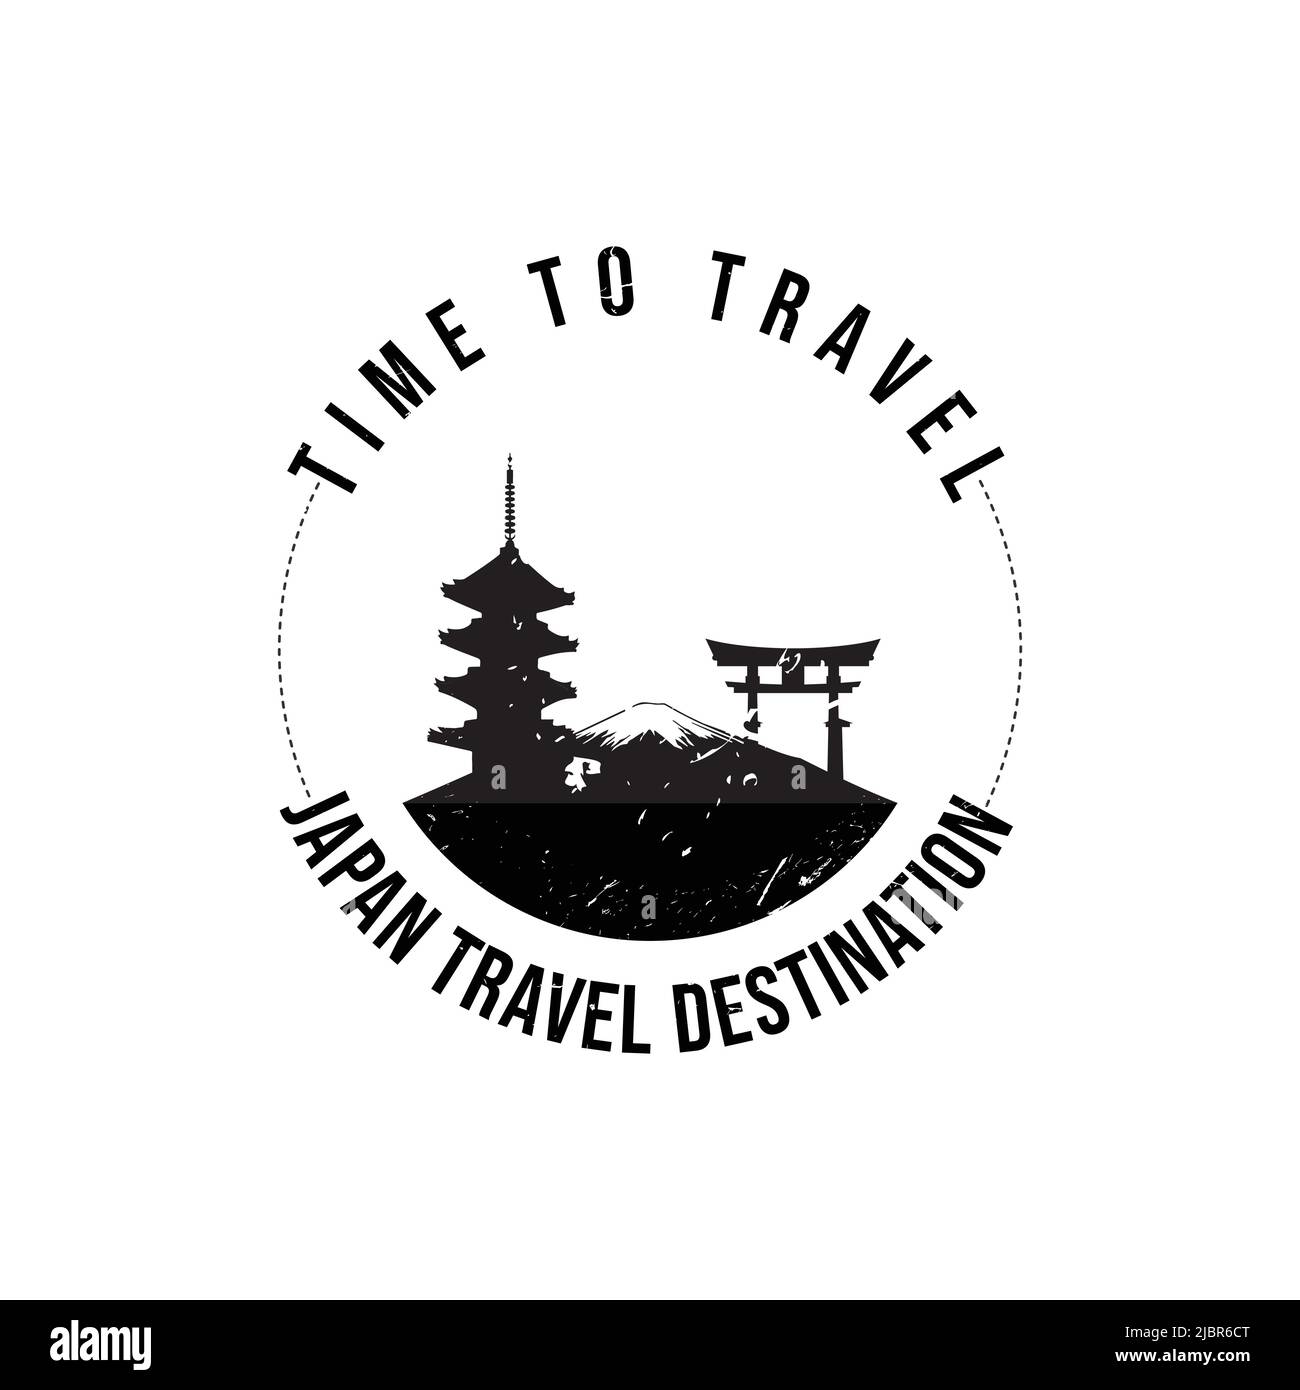 Grunge timbro di gomma con il testo destinazione viaggio Giappone scritto all'interno del timbro. È il momento di viaggiare. Silhouette del monte fuji e tempio storico del Giappone Illustrazione Vettoriale